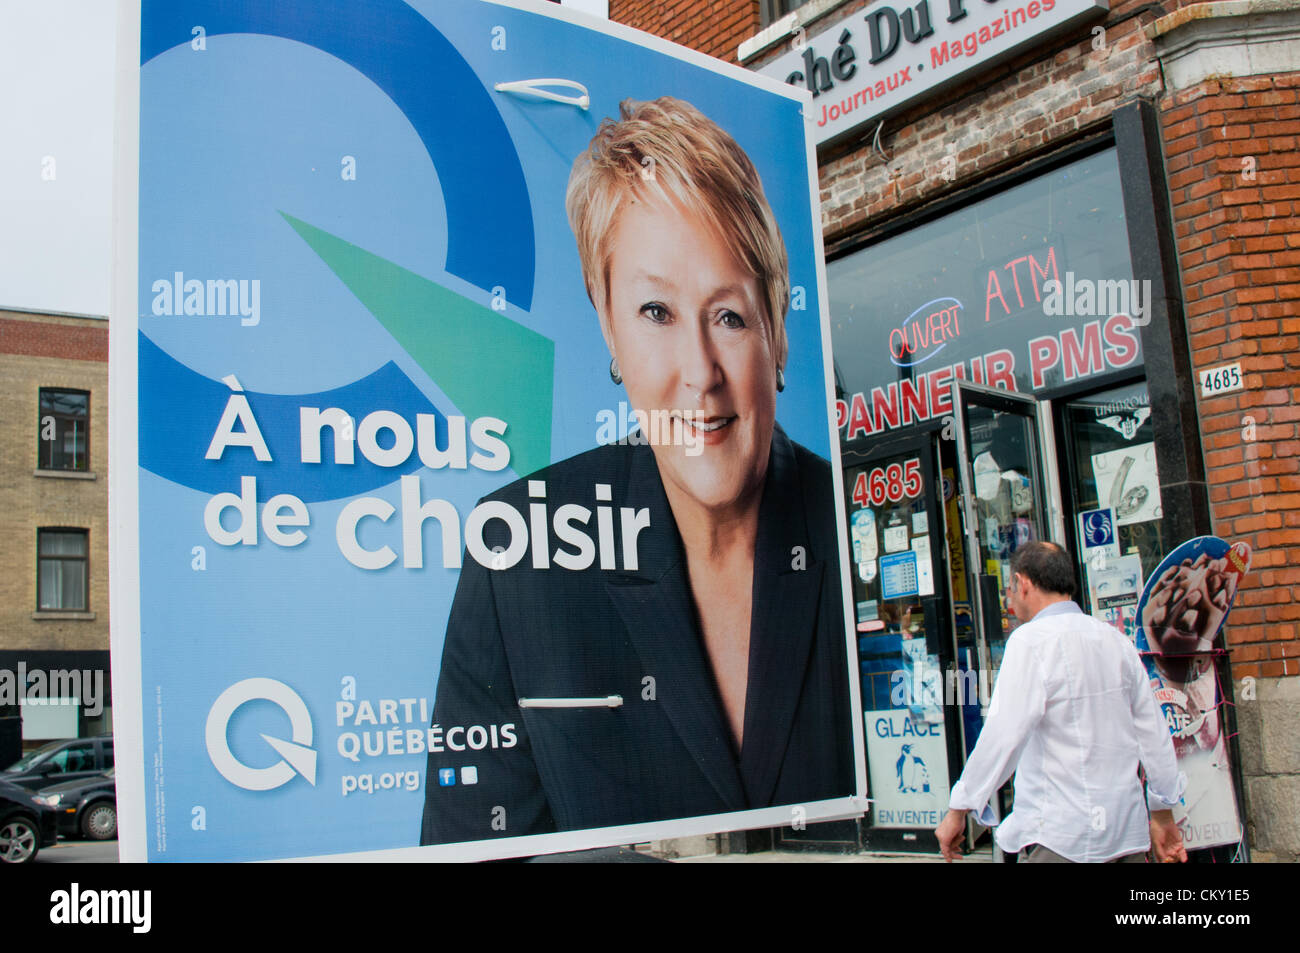 Agosto 31, 2012, Montreal.La pro-gruppo separatista particol Quebec è prevista per vincere un governo di minoranza nelle elezioni provinciali che si terranno il 4 settembre 2012 nella provincia del Québec in Canada. In questa targhetta su una strada di Montreal : Pauline Marois testa della parteci Quebec. Lo slogan dice : è per noi di scegliere . Foto Stock